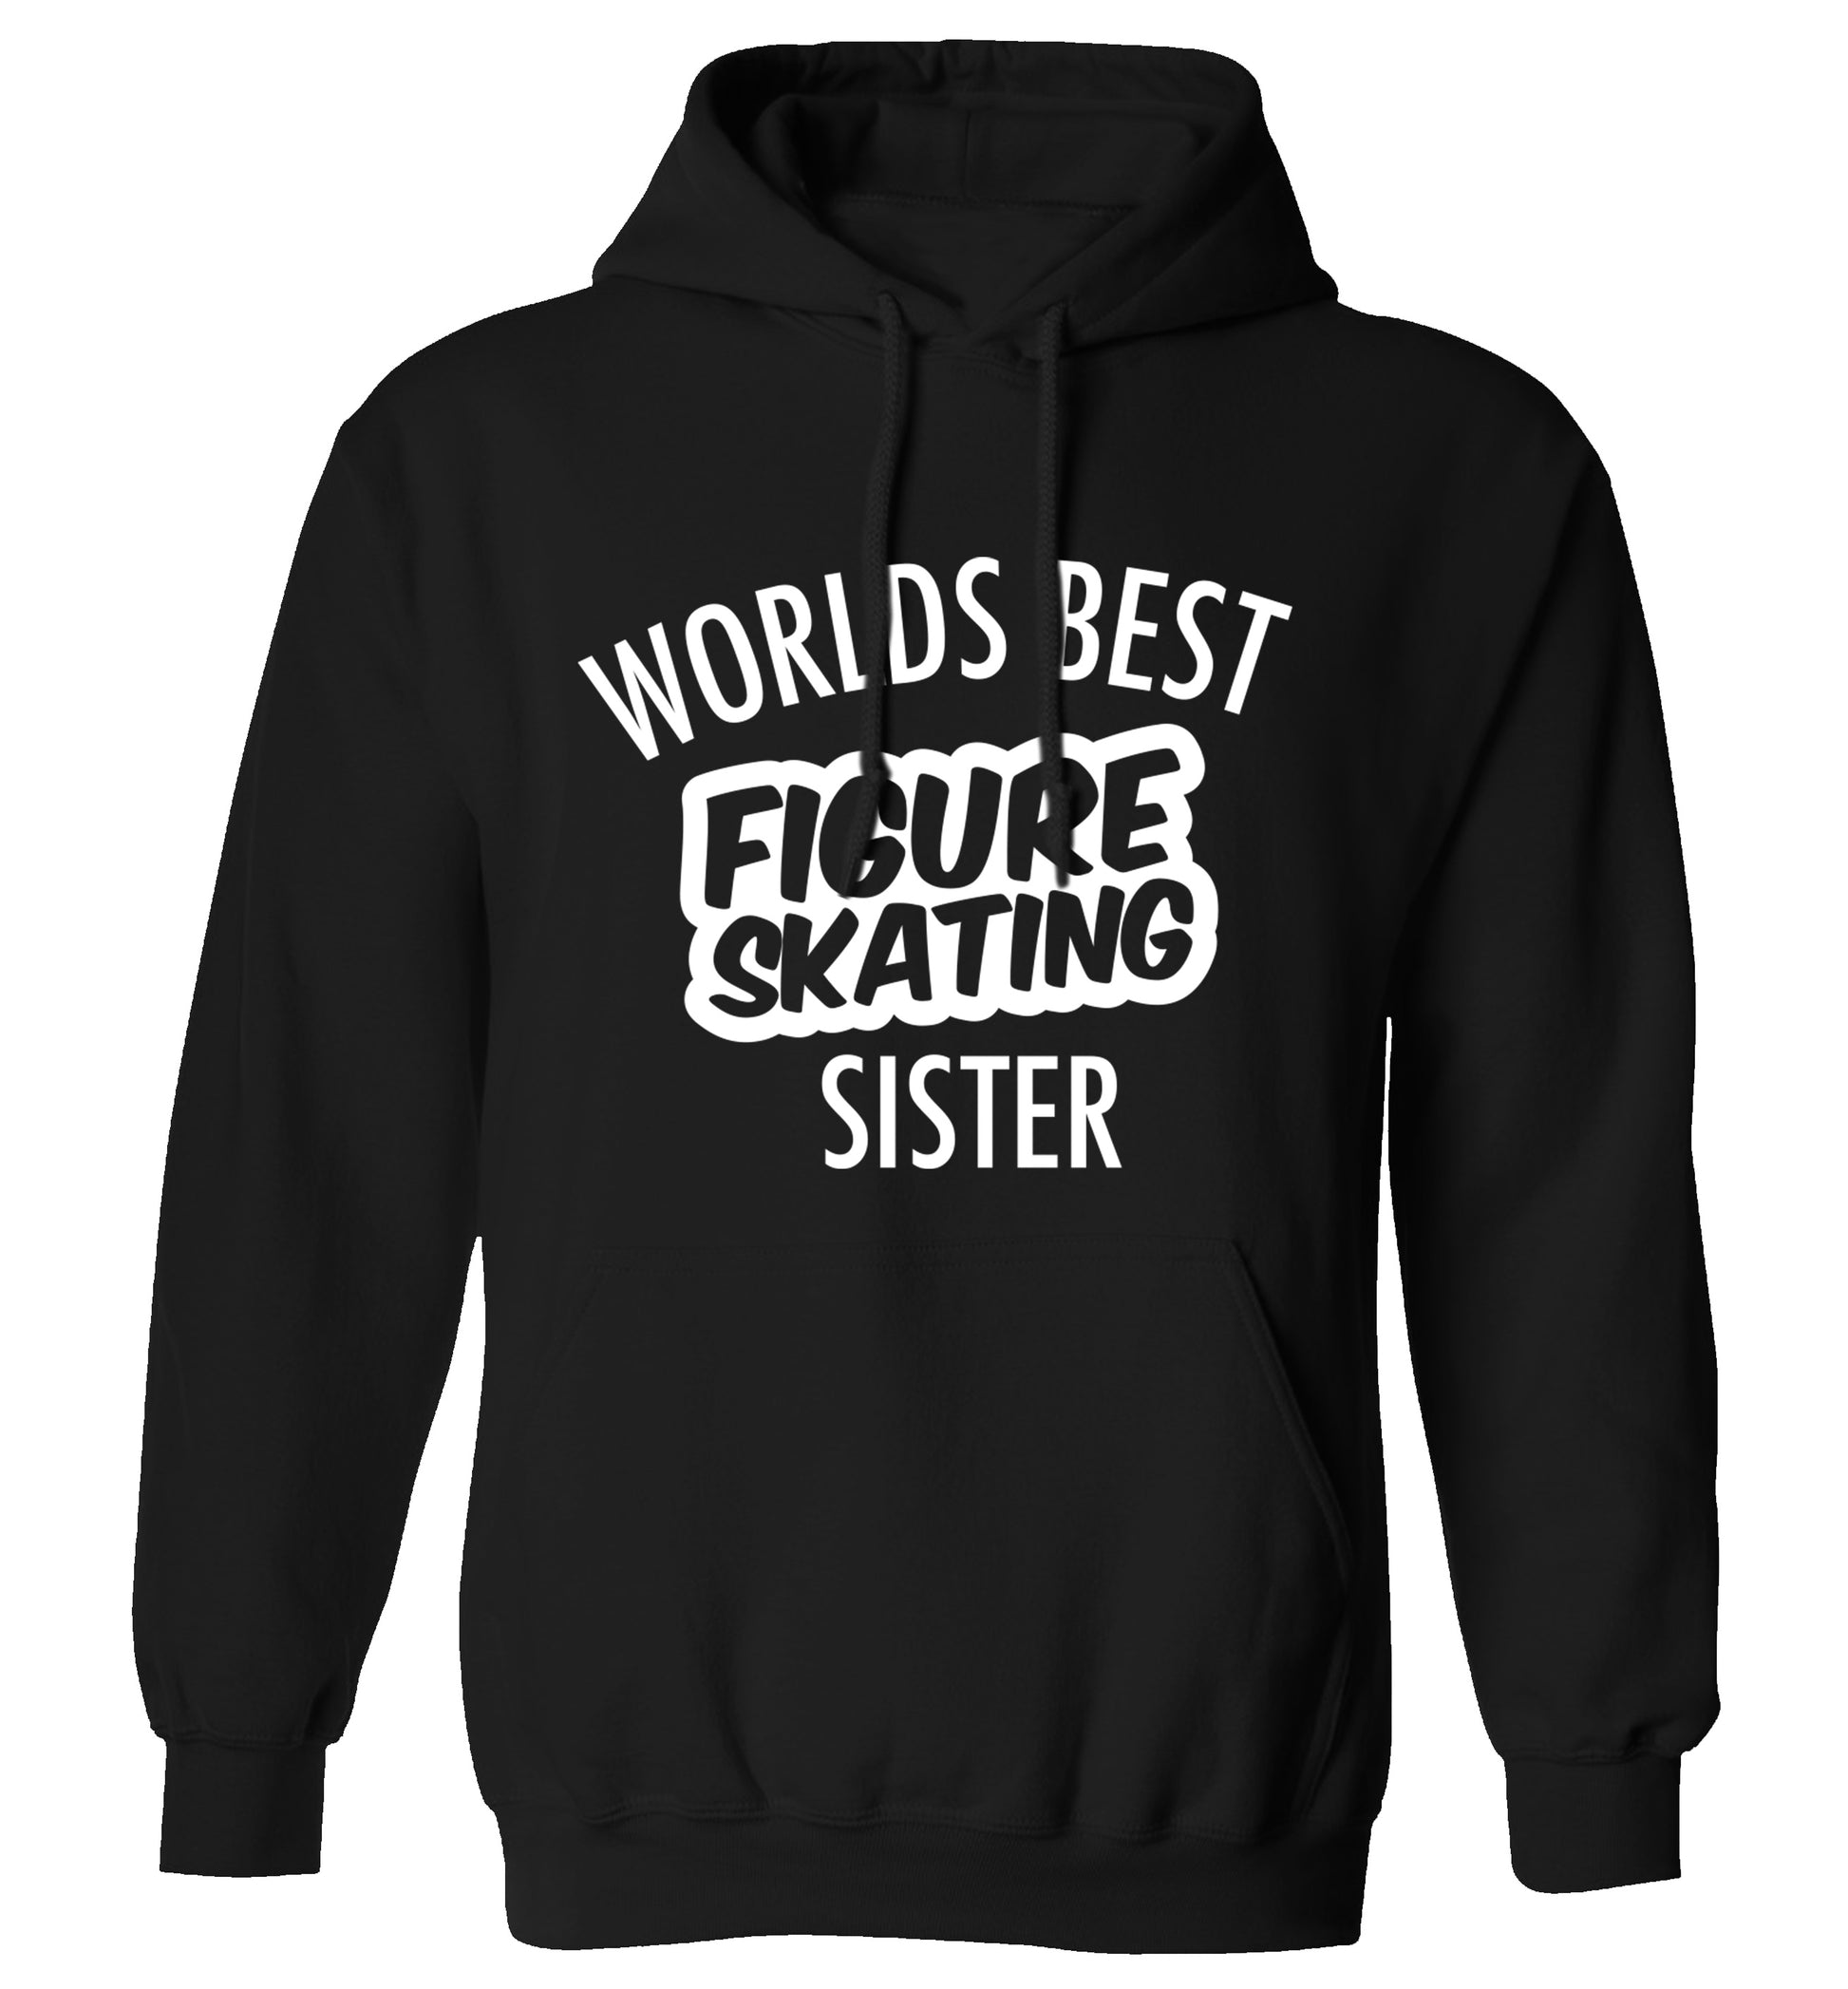 Worlds best figure skating sisteradults unisexblack hoodie 2XL